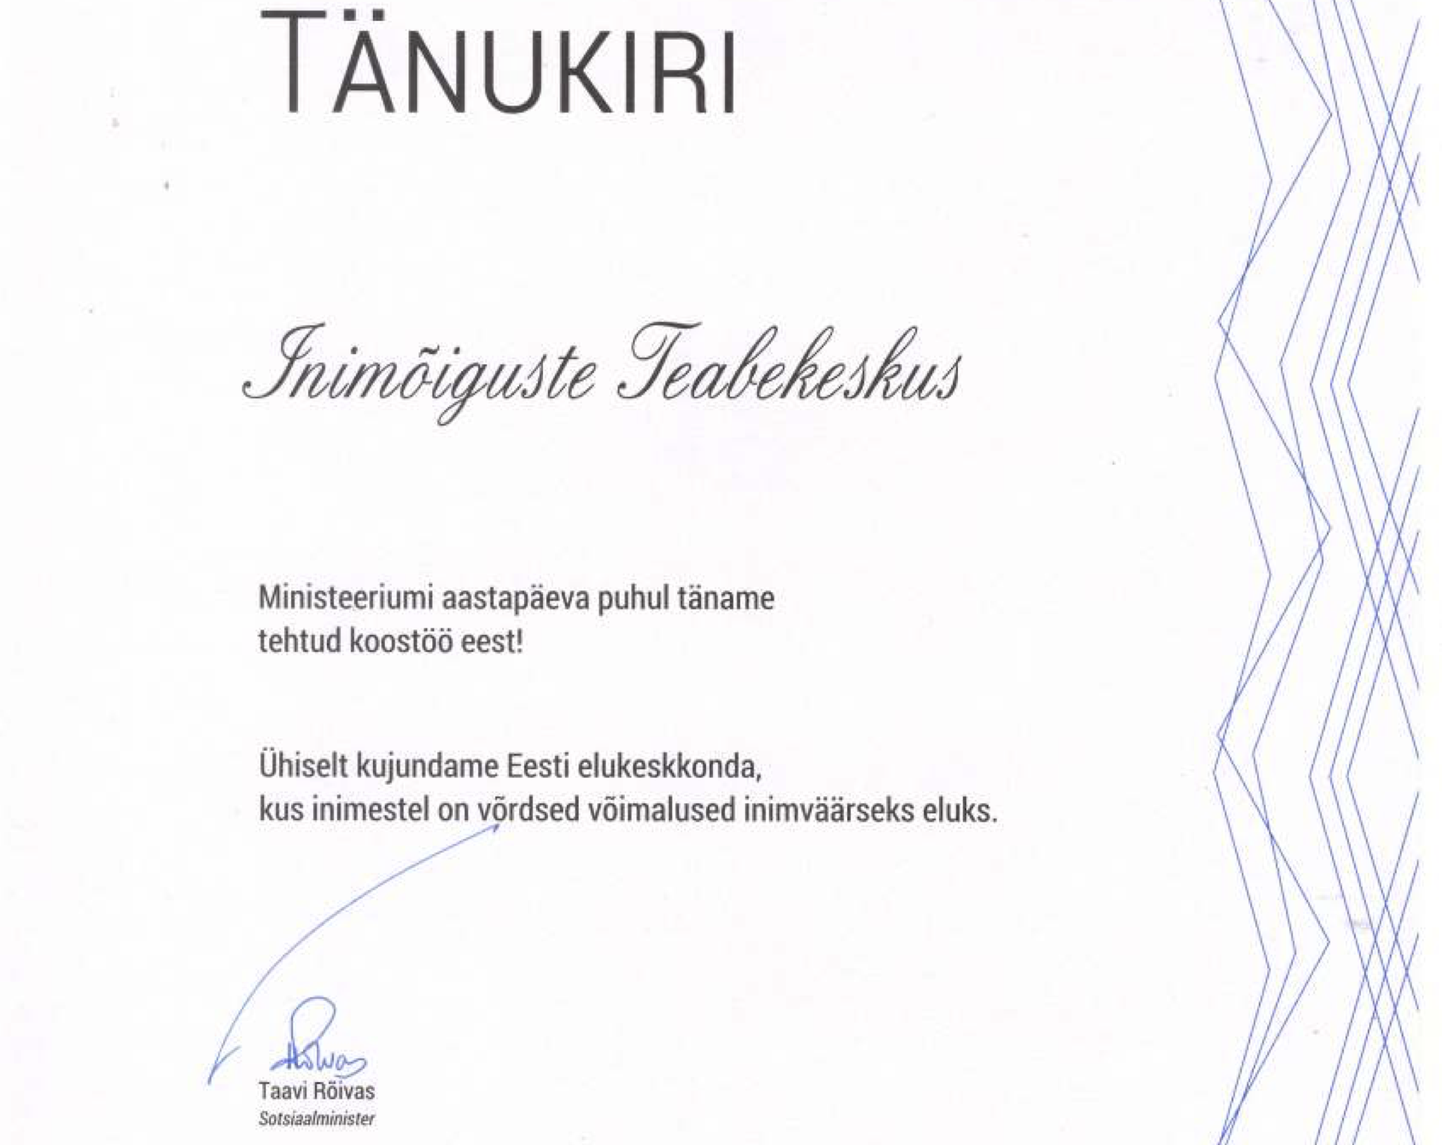 Taavi Rõivase sotsiaalministrina väljastatud tänukiri Inimõiguste Teabekeskusele.